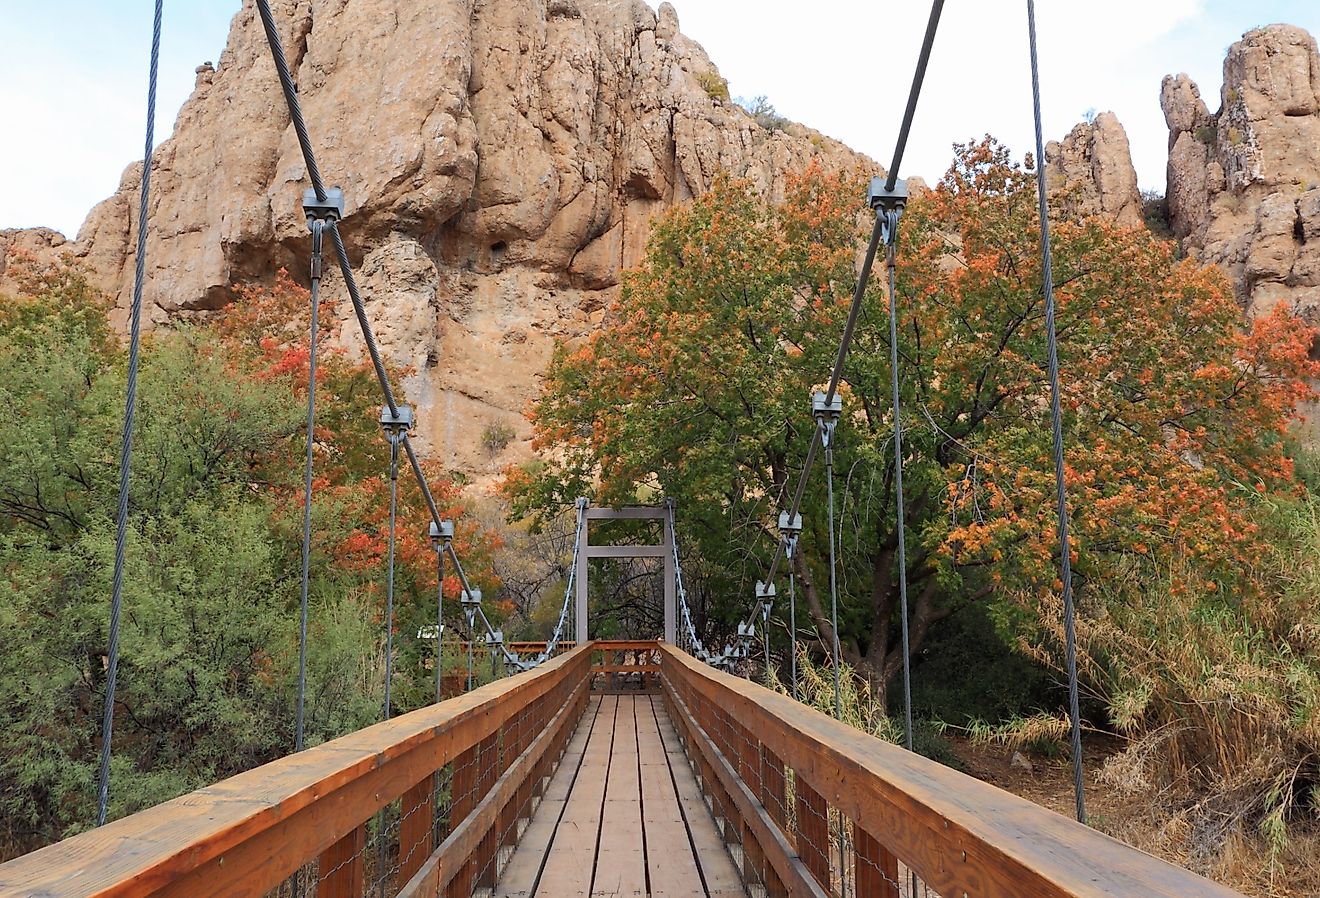 Suspension Bridge at the Boyce Thompson Arboretum, Superior, Arizona, in the fall.